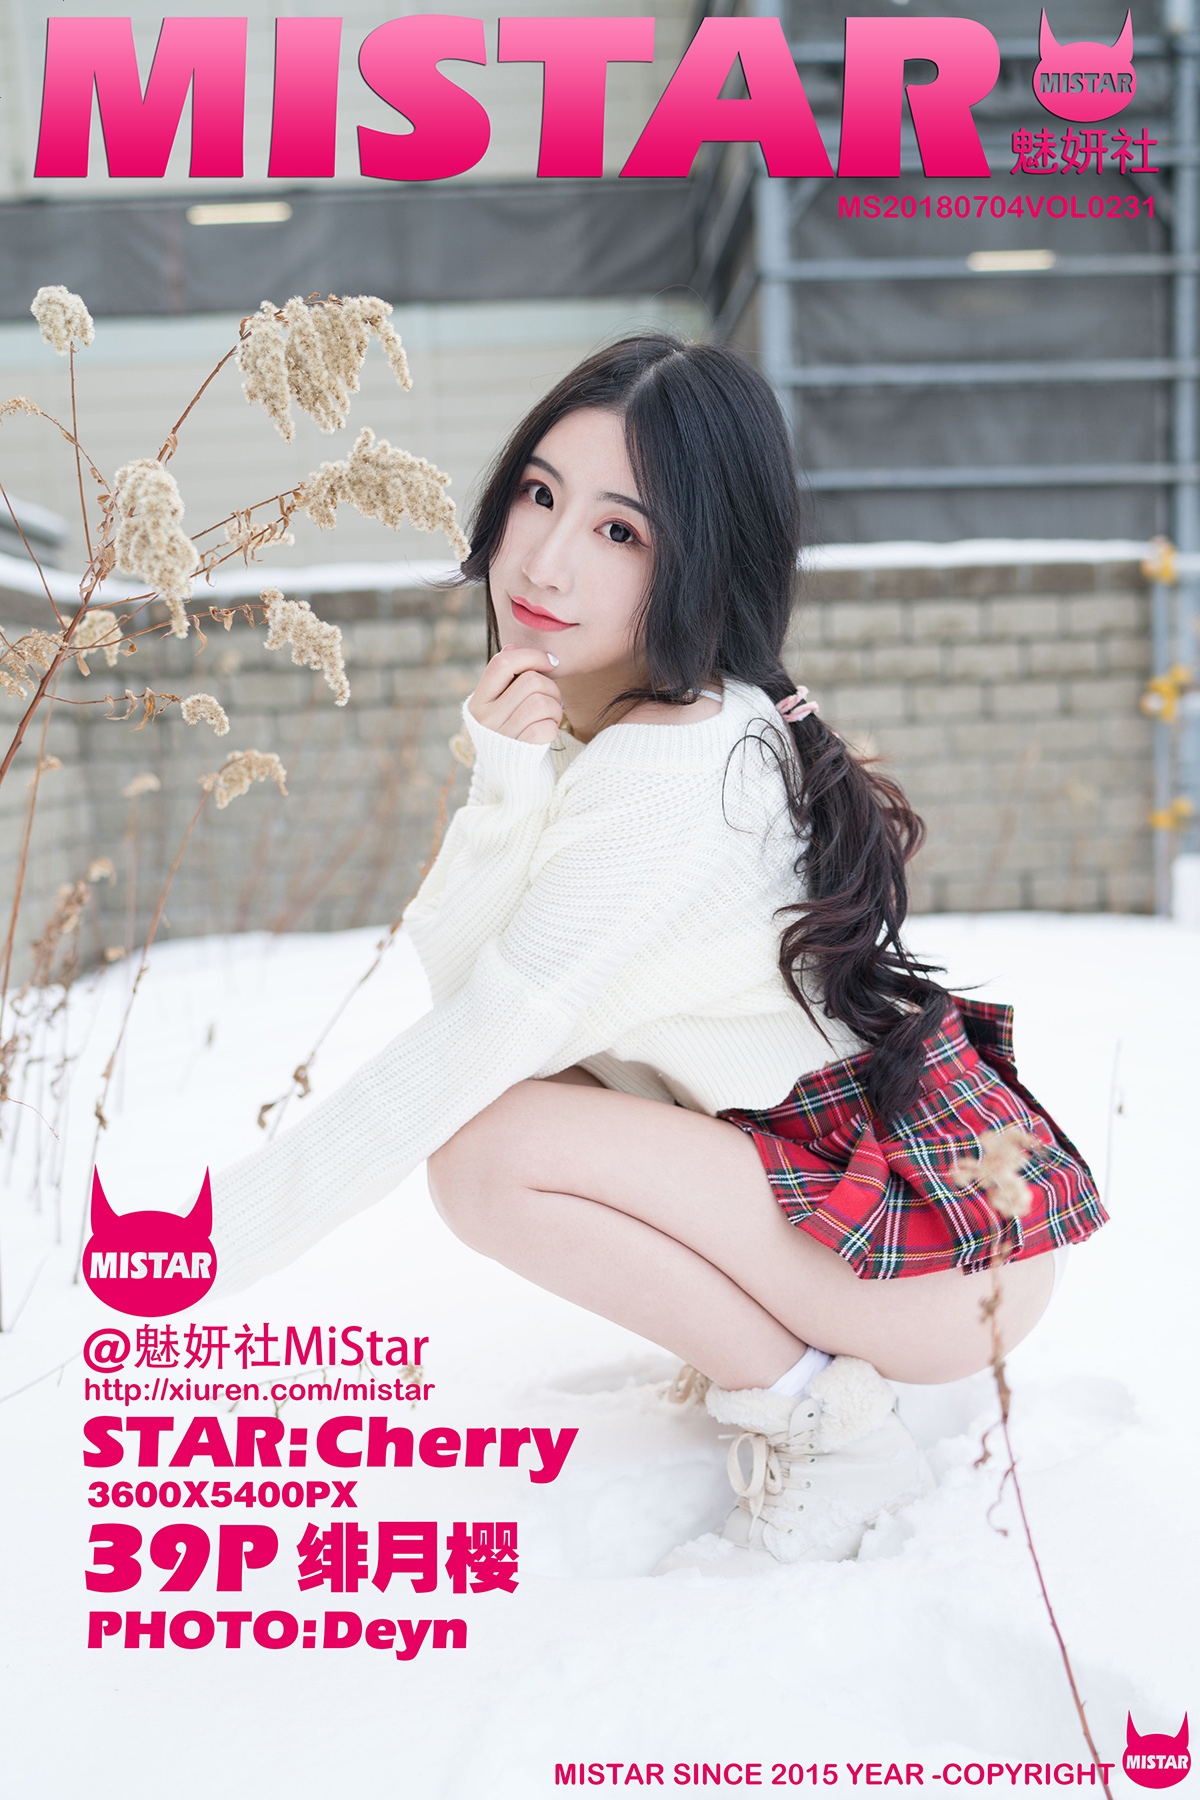 【MiStar魅妍社】Vol.231 绯月櫻-Cherry 性感寫真 - 貼圖 - 清涼寫真 -